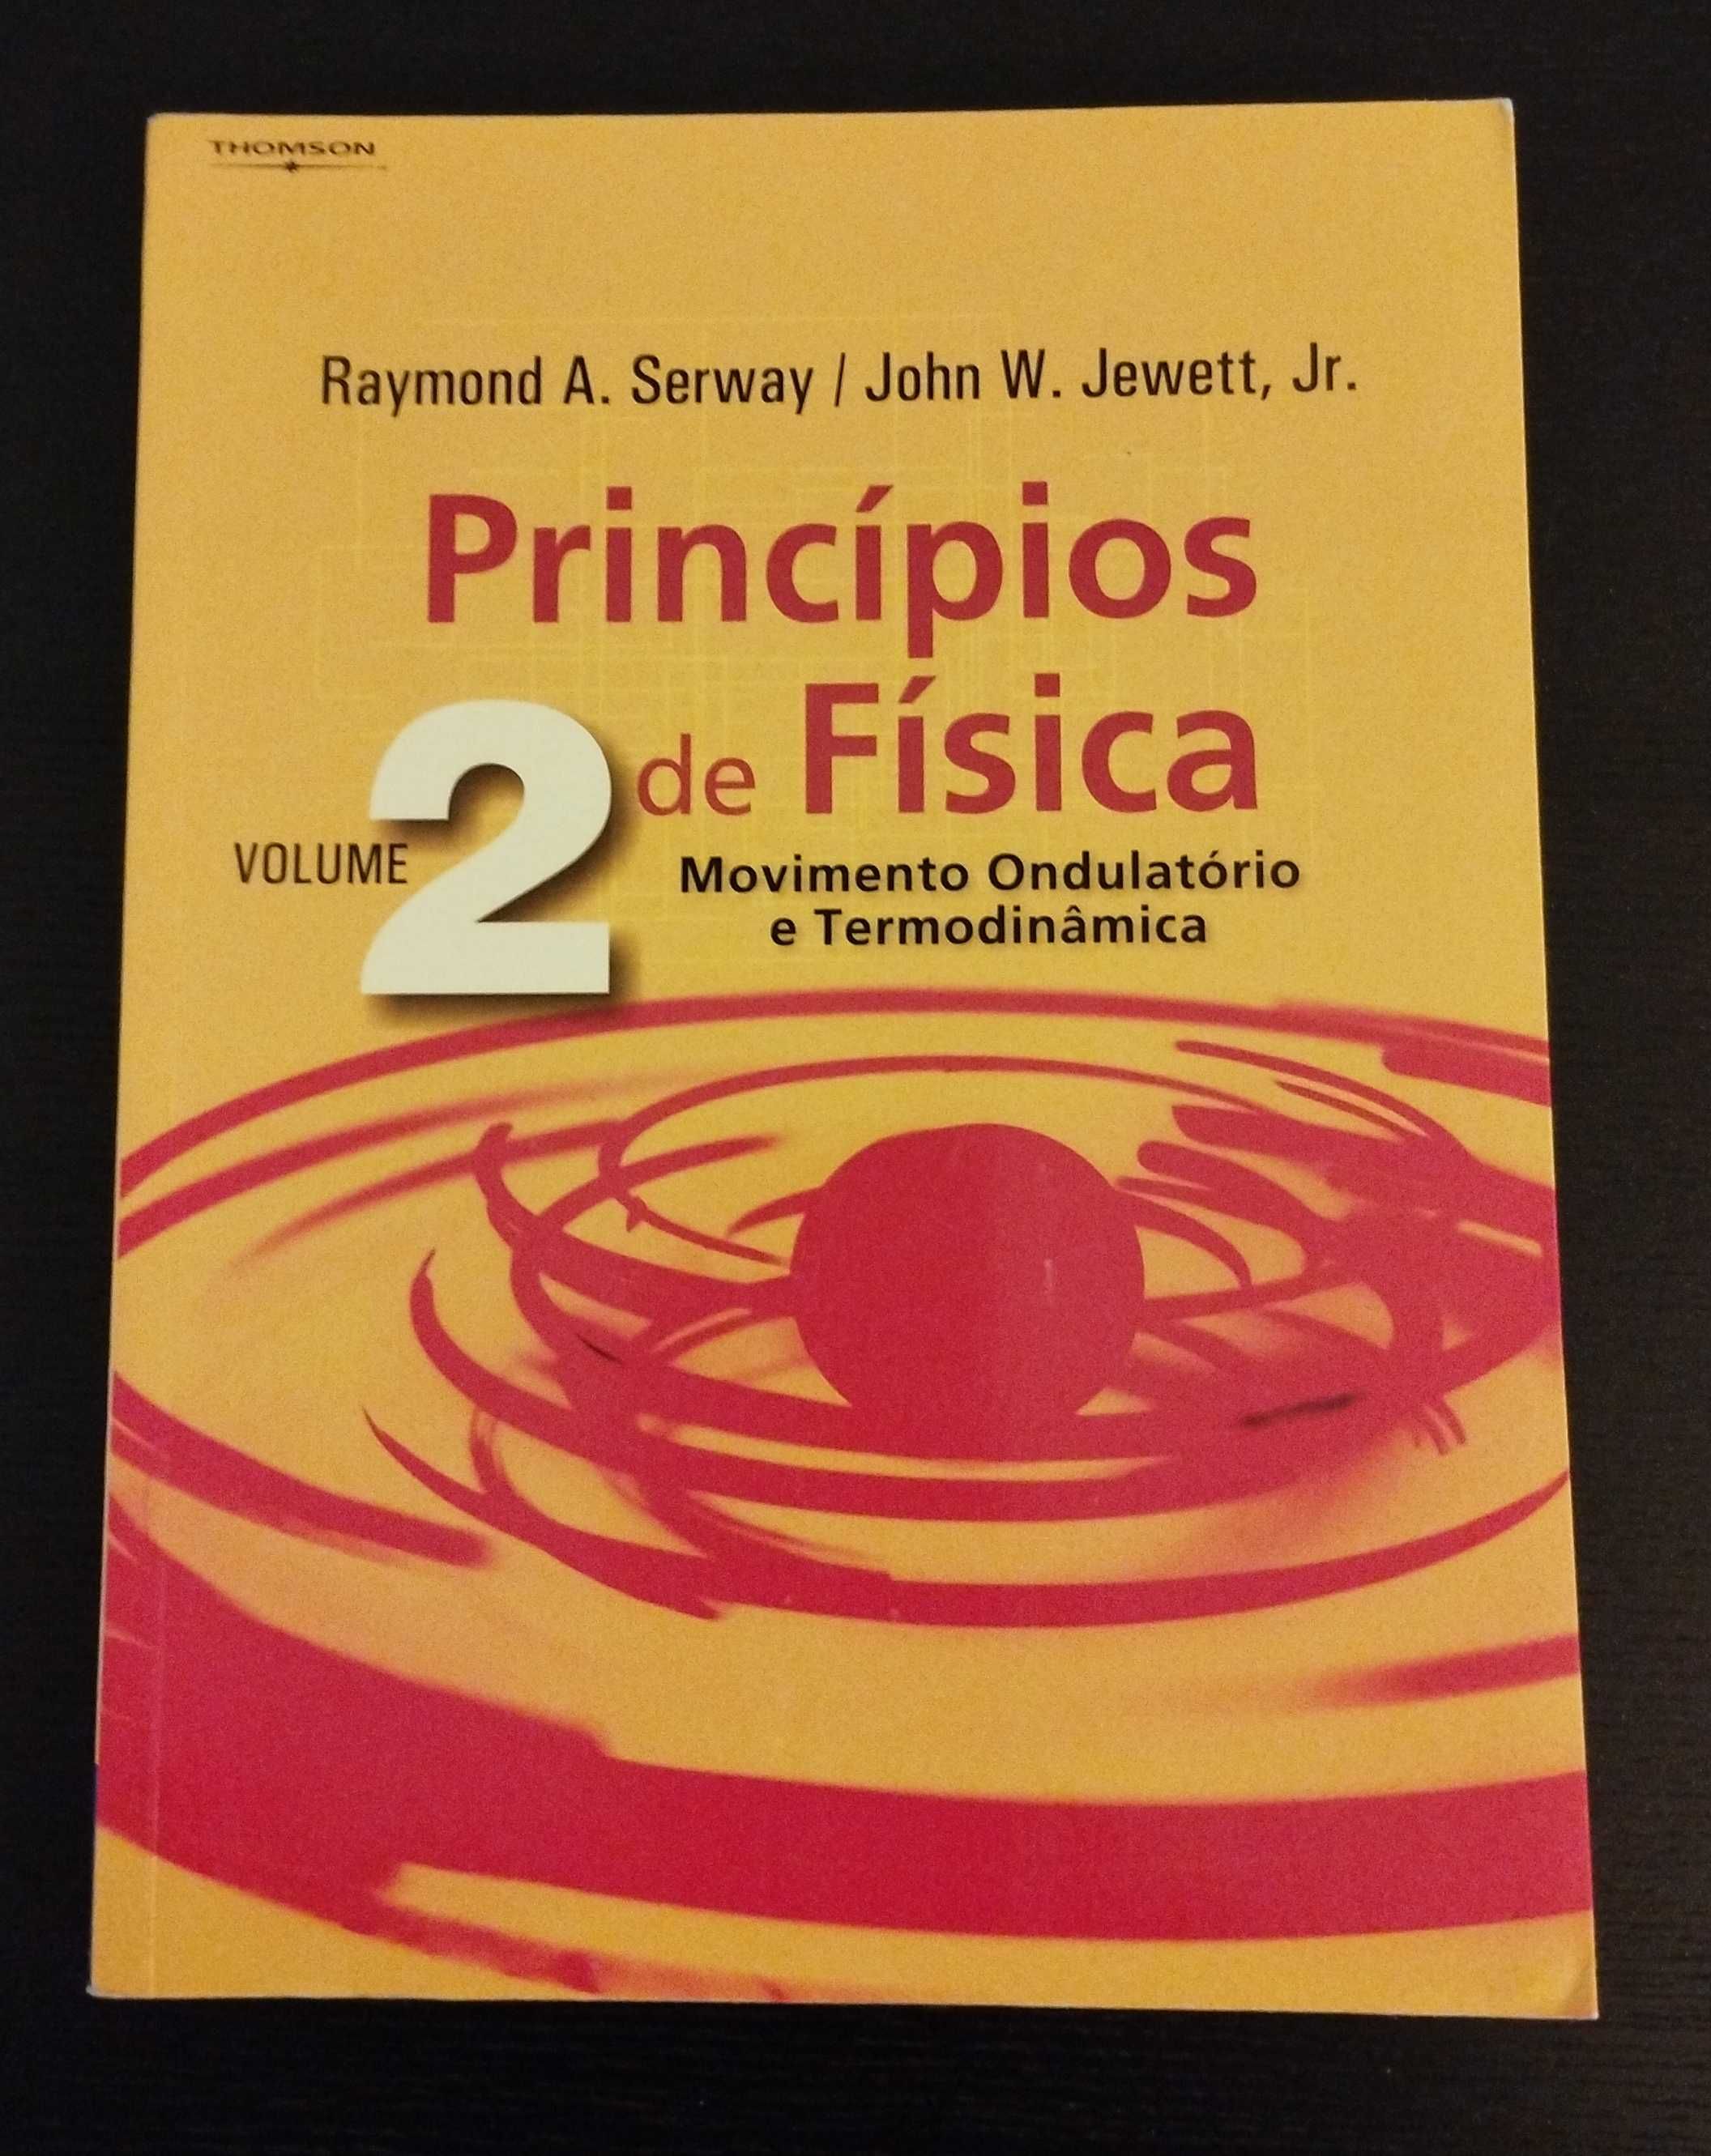 Princípios de Física - Vol. 2 - Movimento ondulatório e termodinâmica